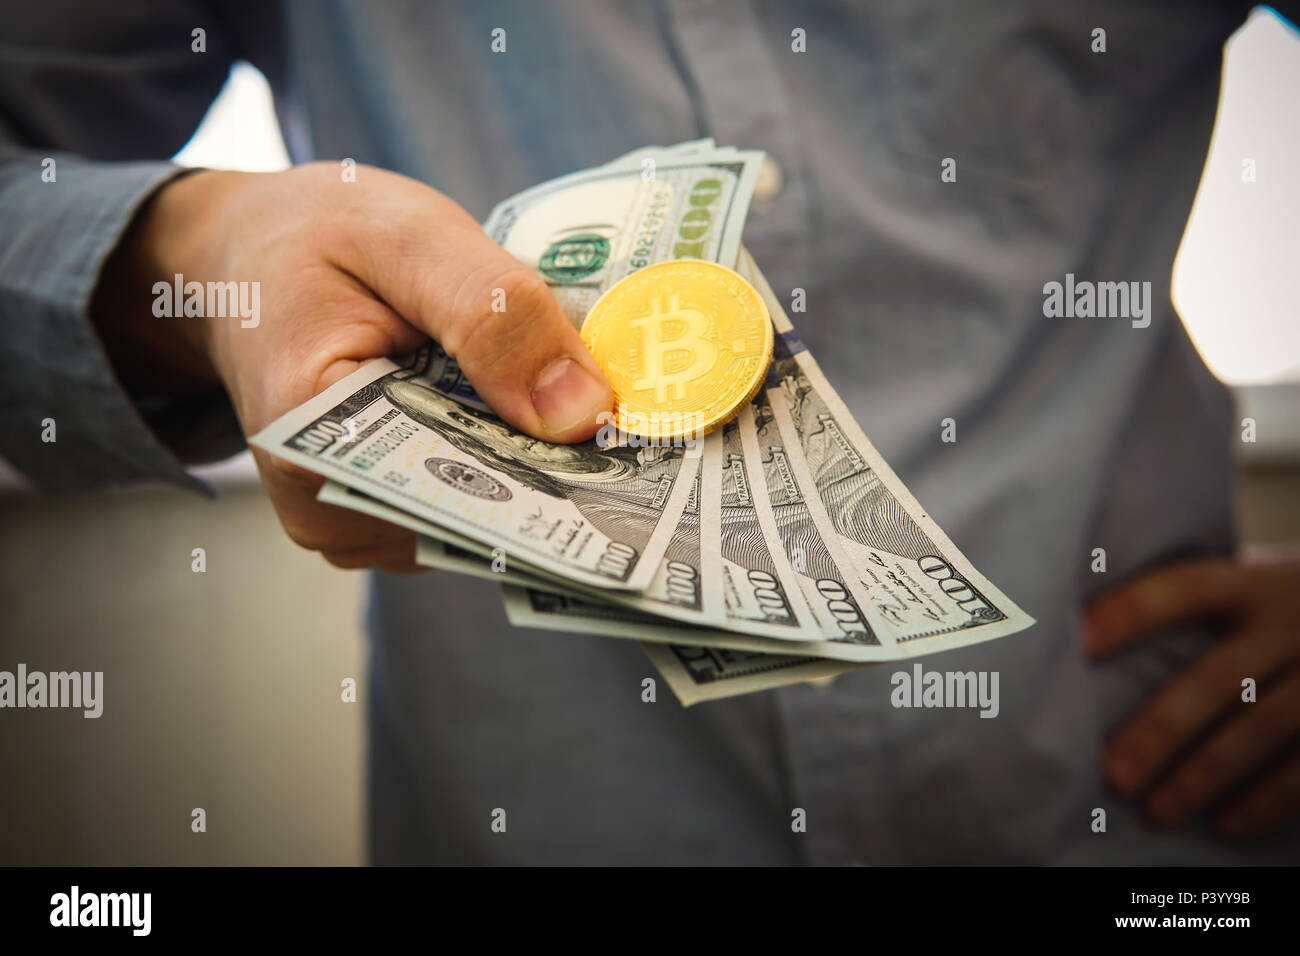 Oro moneda Bitcoin 500 dólares en la mano del hombre en el fondo borroso. Empresario, comerciante de inicio muestra sus ganancias en la tasa de crecimiento de bitcoin Foto de stock